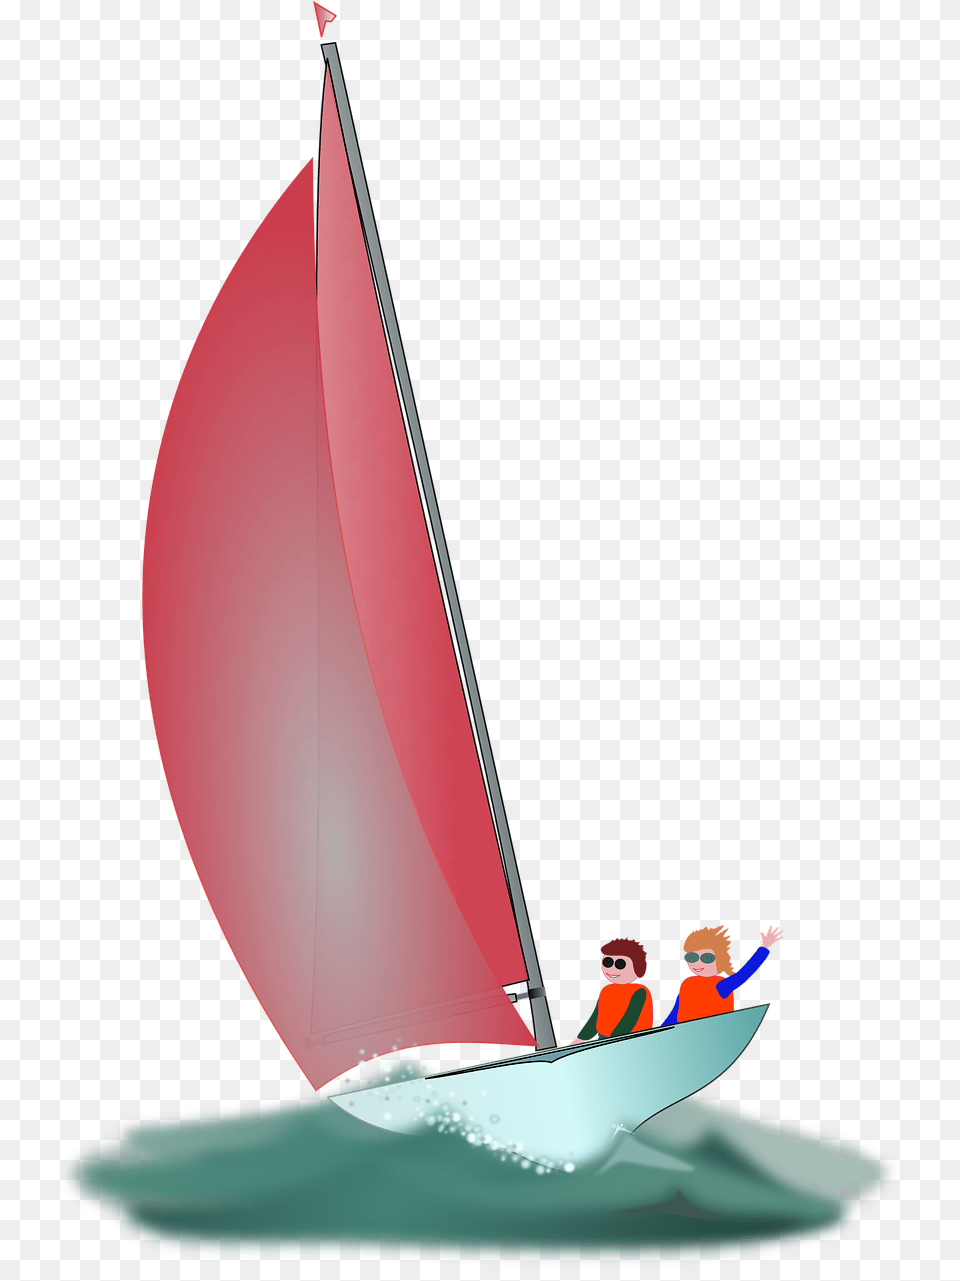 Sail Most Wind Sailing Boat Sailing, Watercraft, Vehicle, Transportation, Sailboat Png